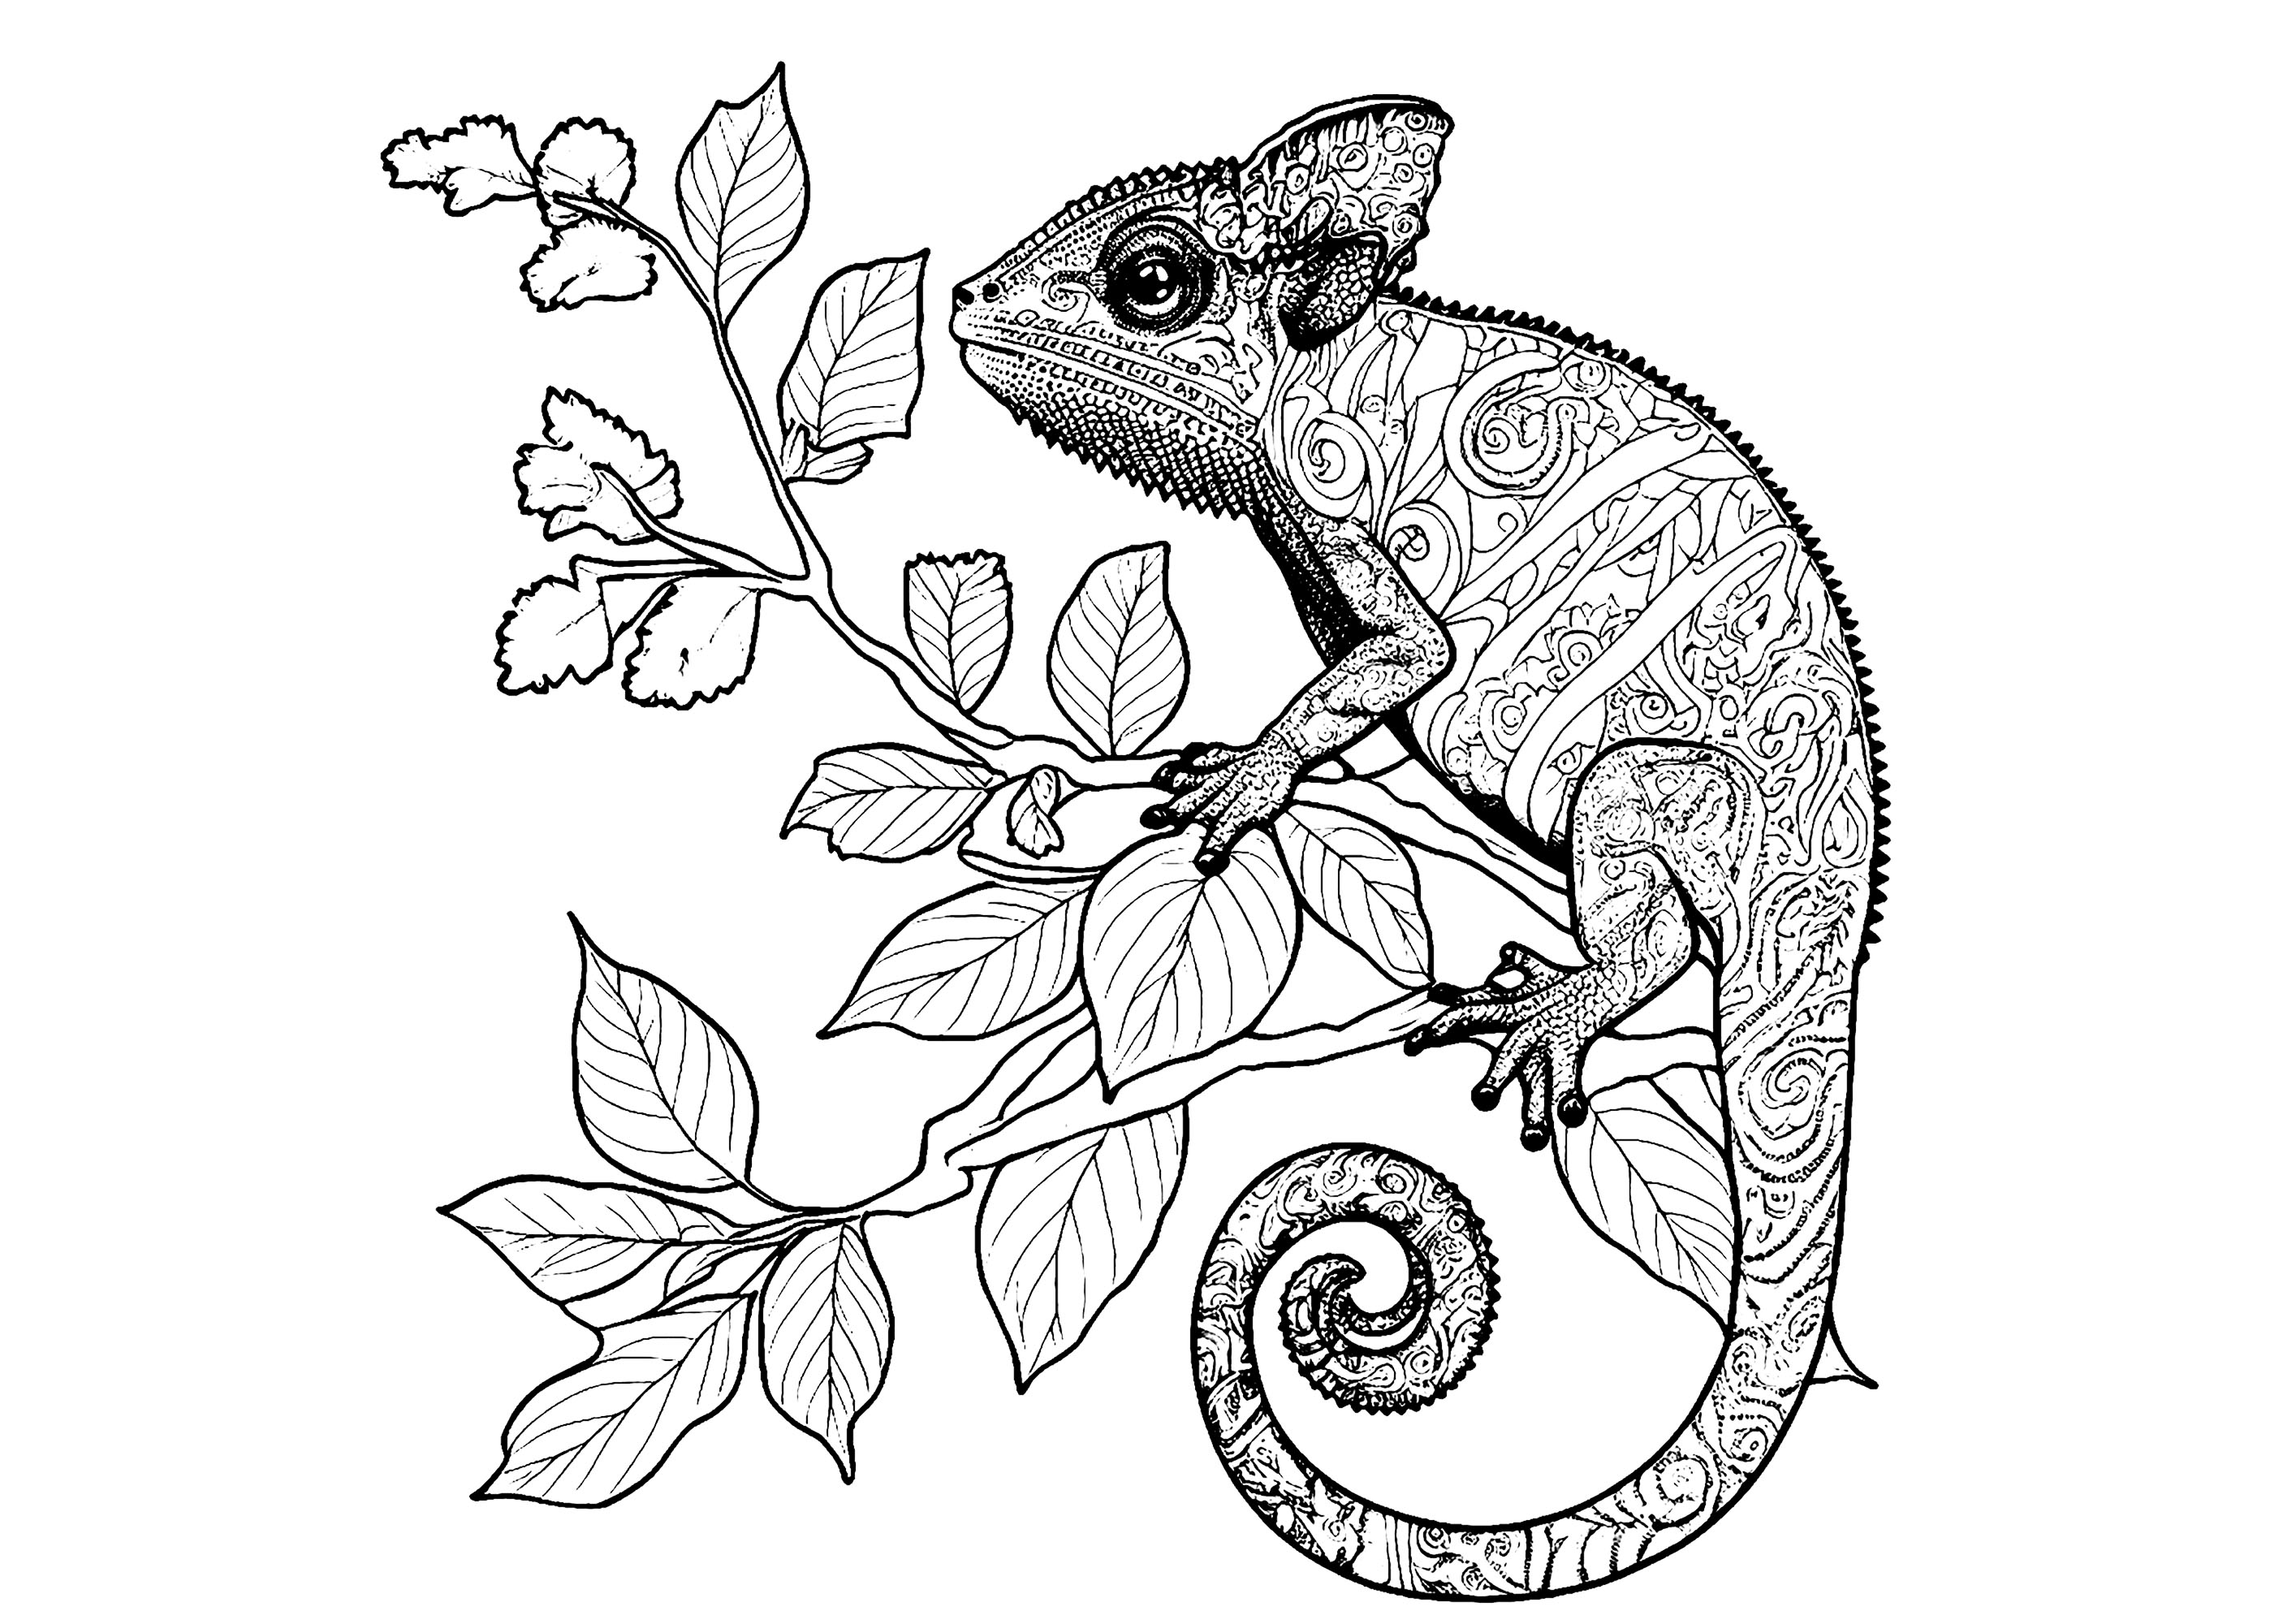 Coloriage d'un caméléon plein de détails, posé sur une branche fleurie